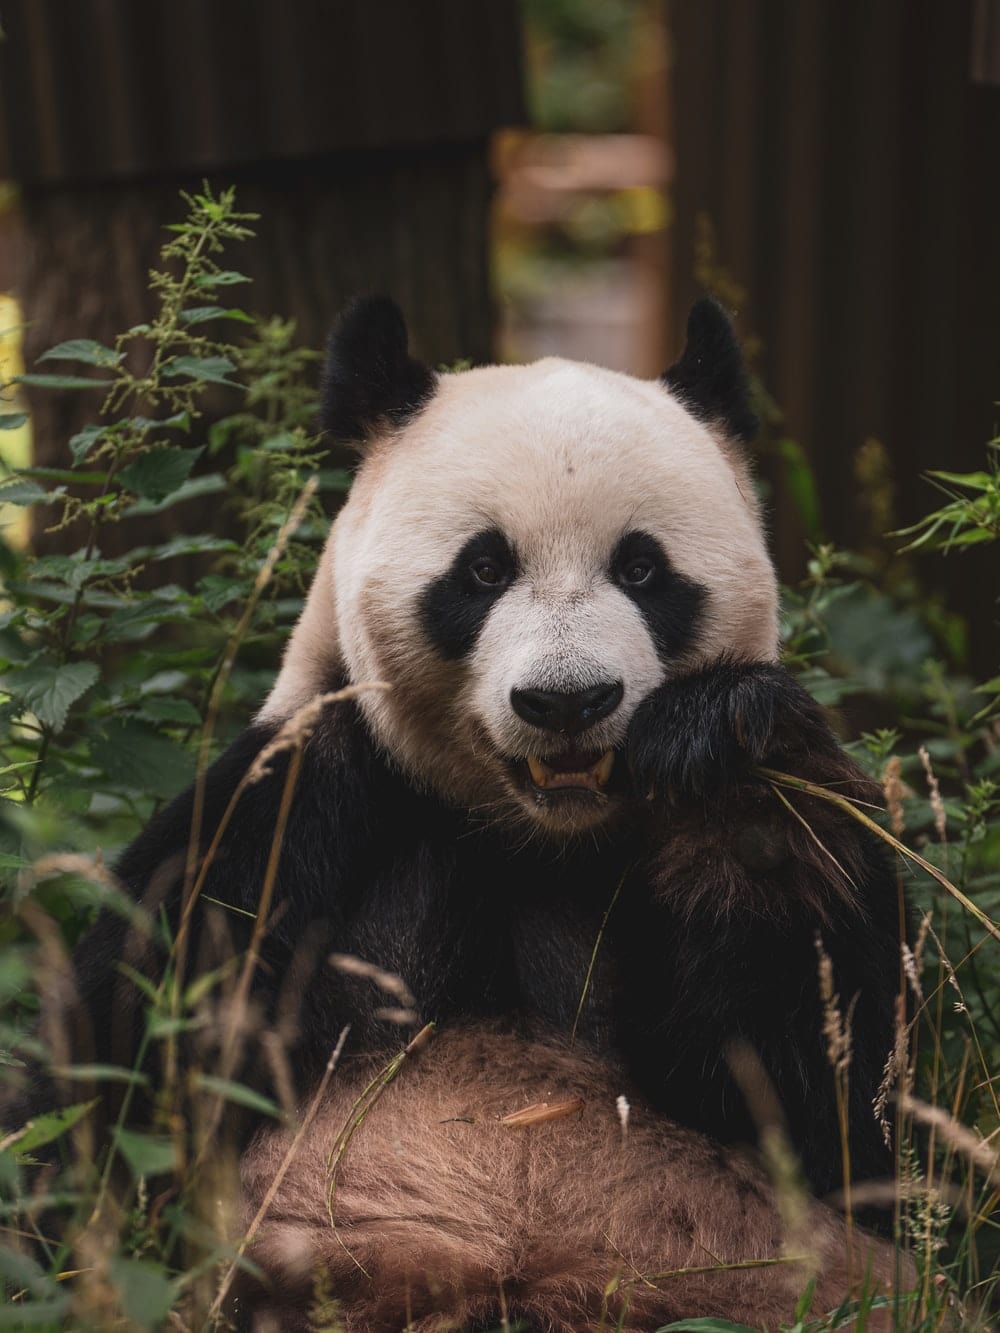 Cross Stitch | Panda - Panda Bear On Green Grass During Daytime - Cross Stitched